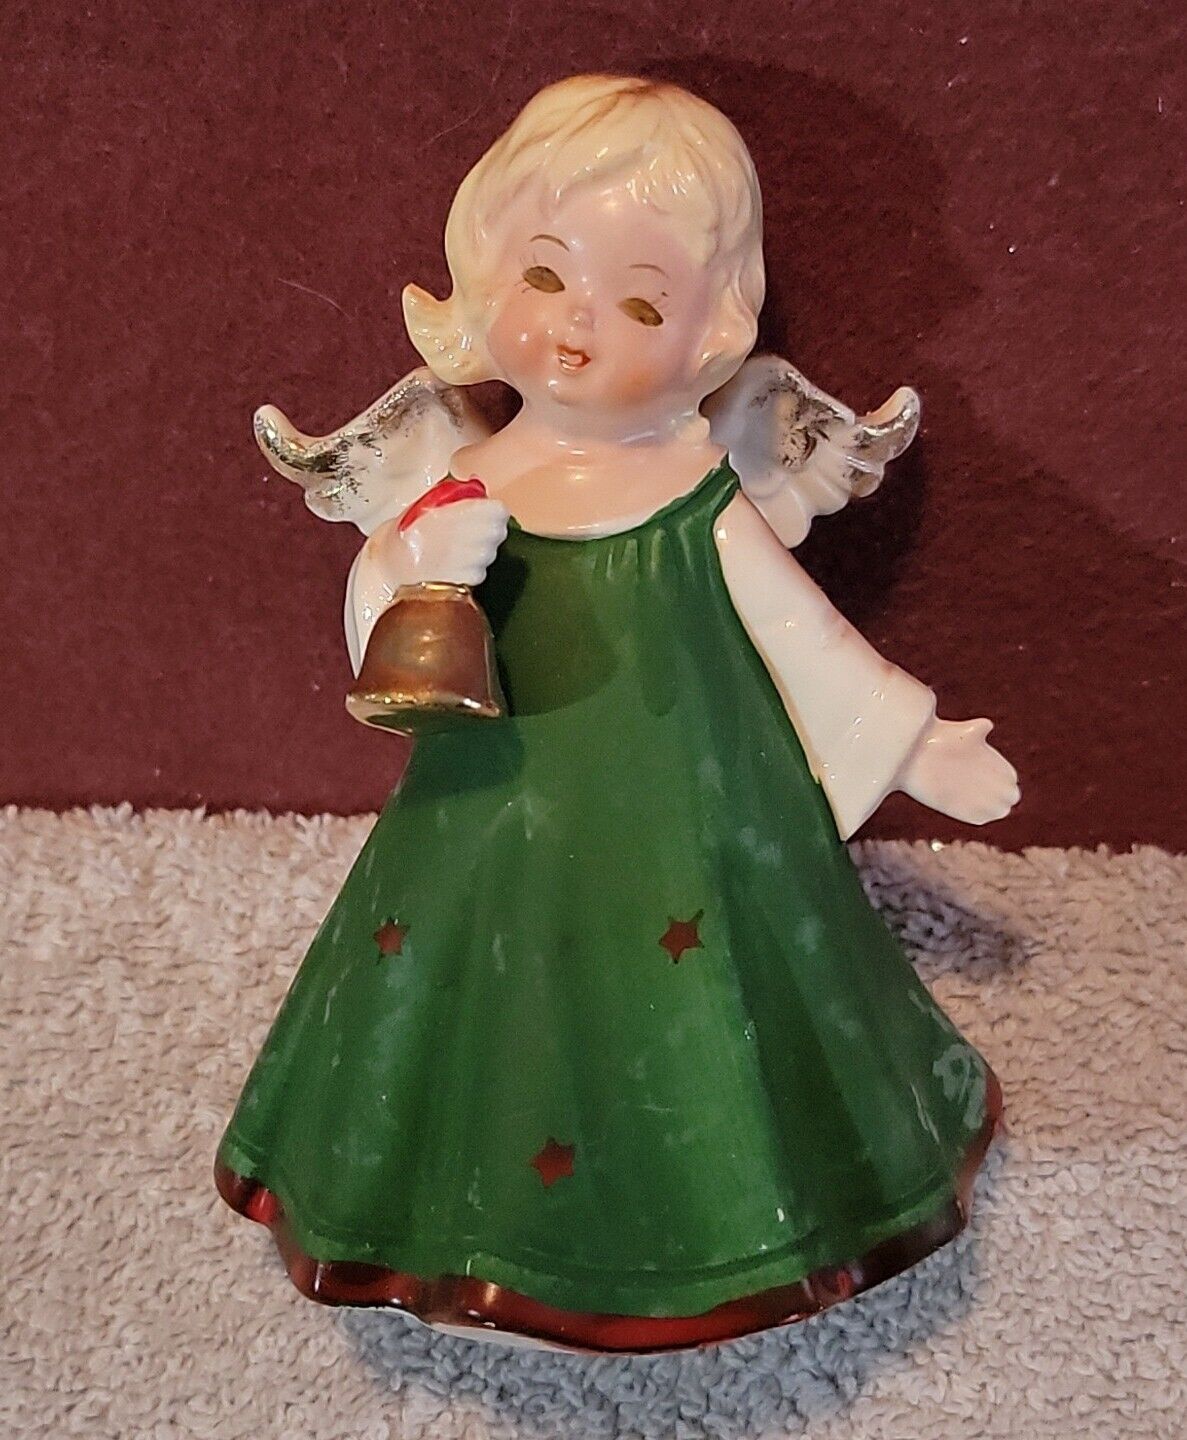 Vintage Lefton Angel Figurine Green Dress Bell KW4836 Blonde 1950s Japan